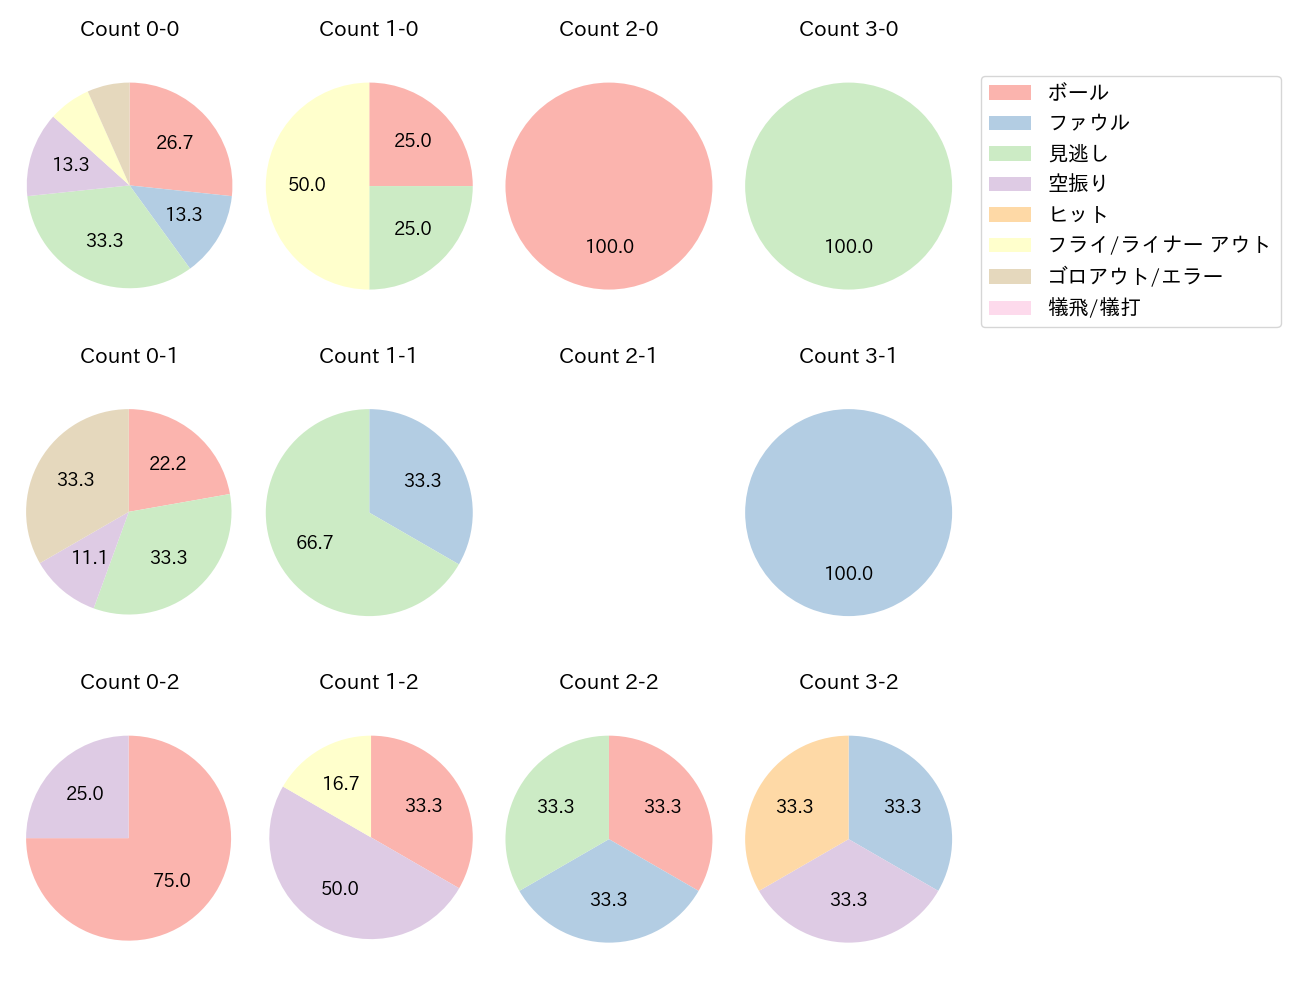 岡 大海の球数分布(2022年6月)